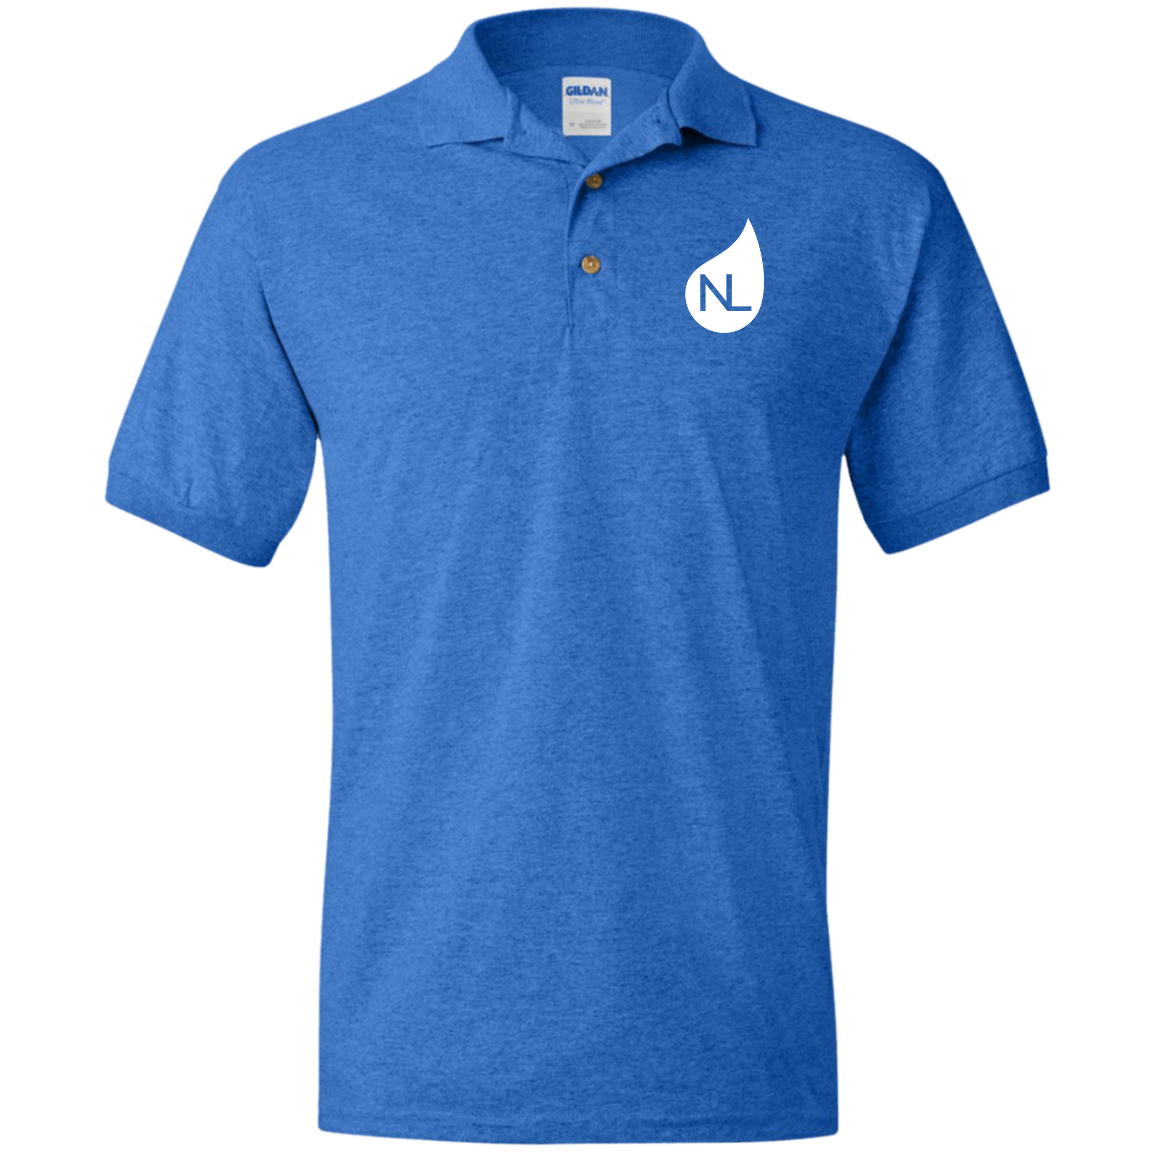 Polo Shirts - NL Icon